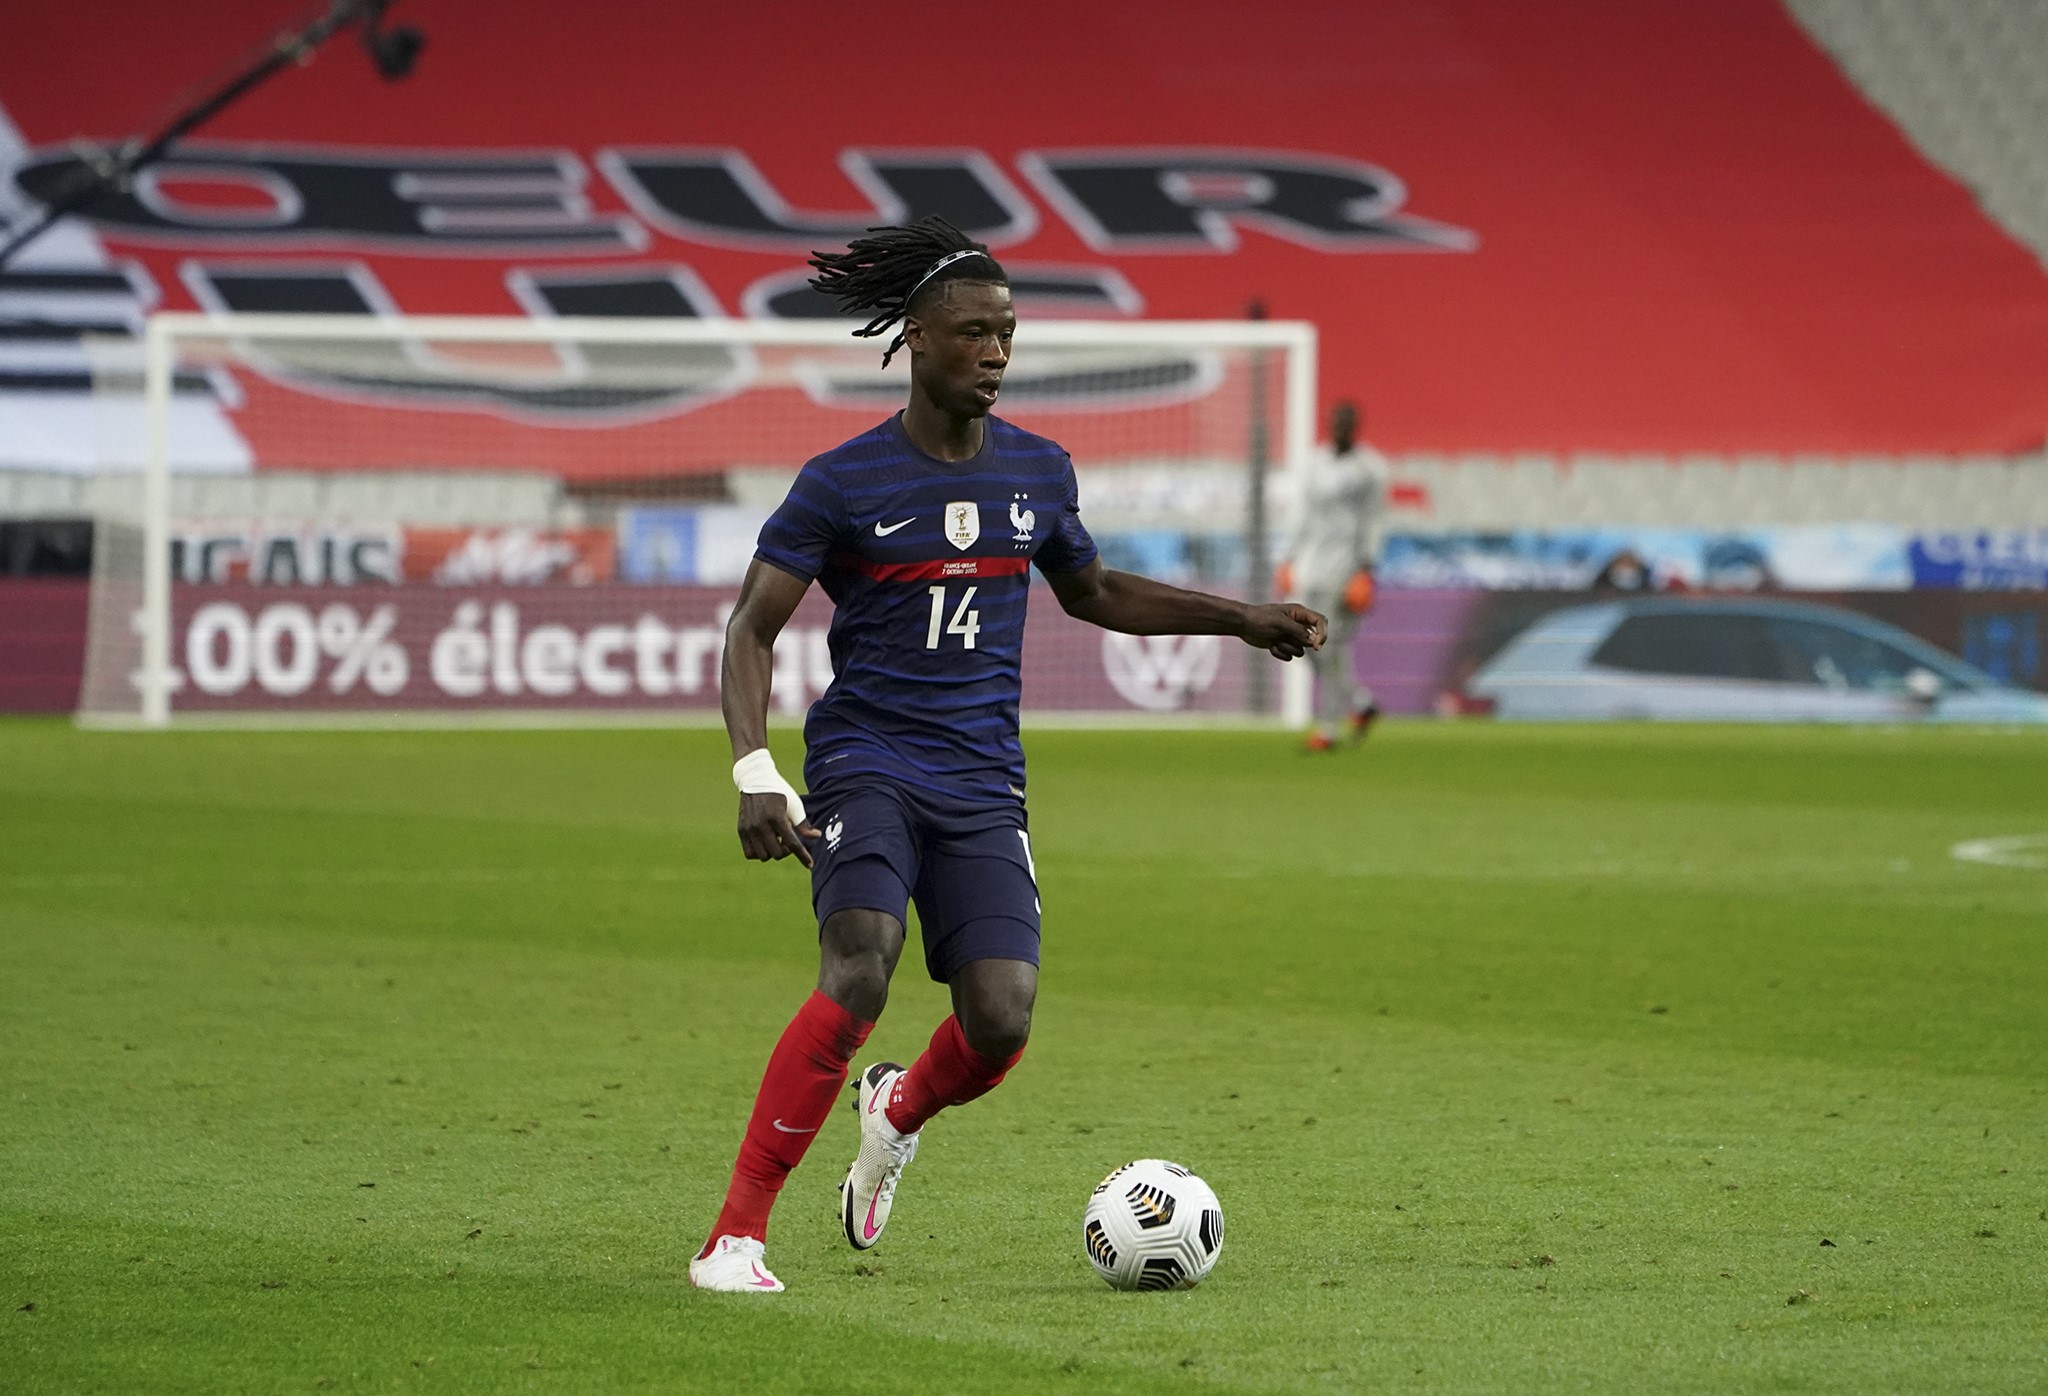 Antilles-Guyane / Euro U21: Les matchs de l'équipe de France Espoirs en direct sur La 1ère